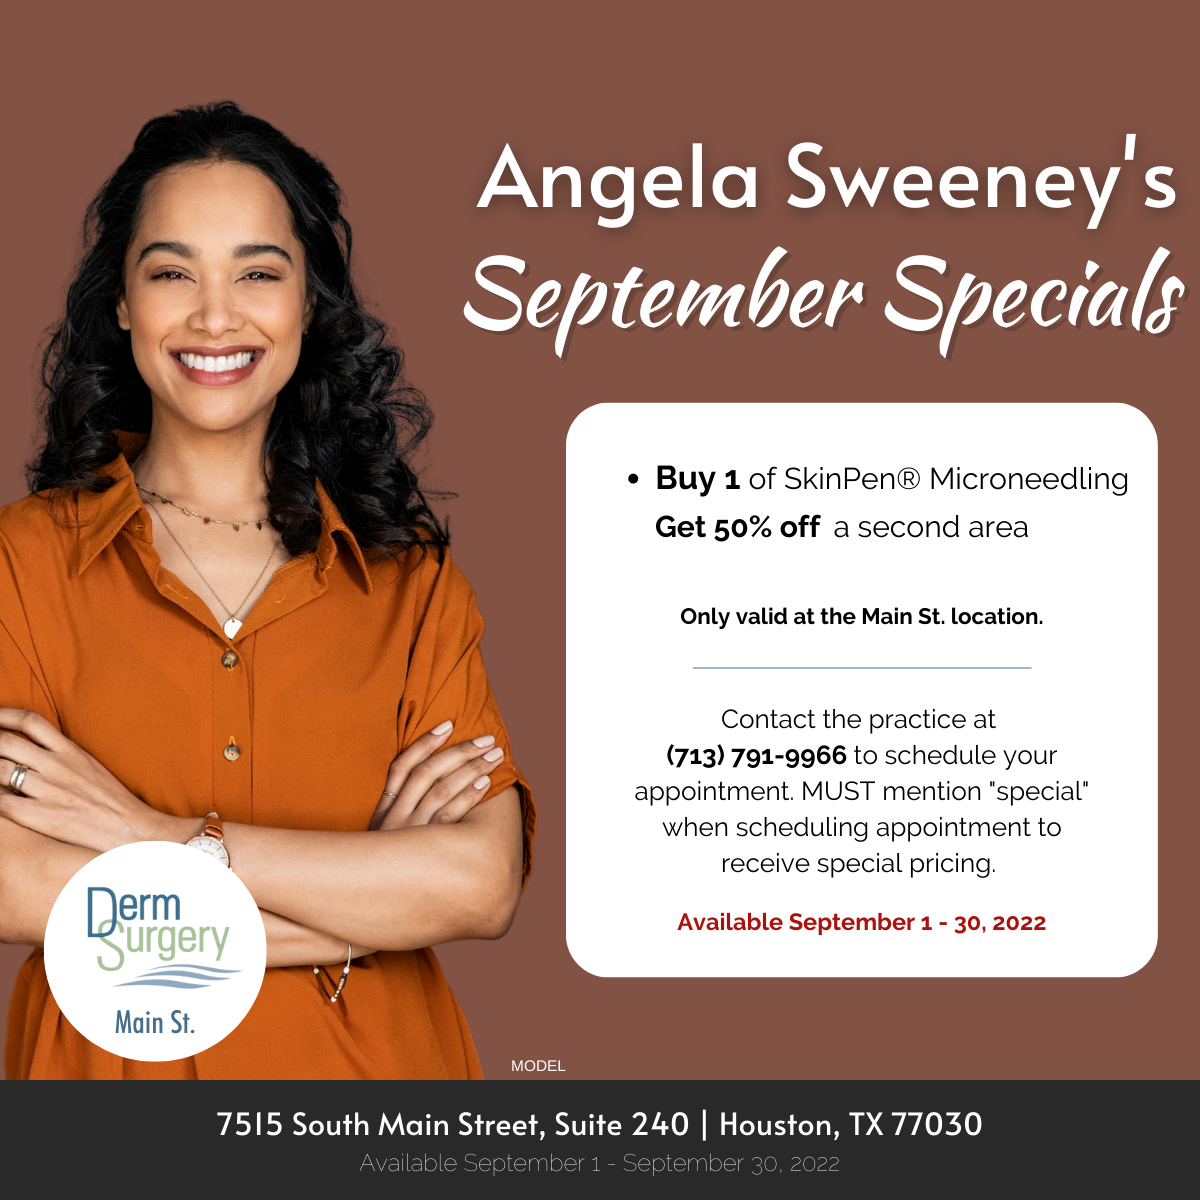 Angela Sweeney's September Specials 2022